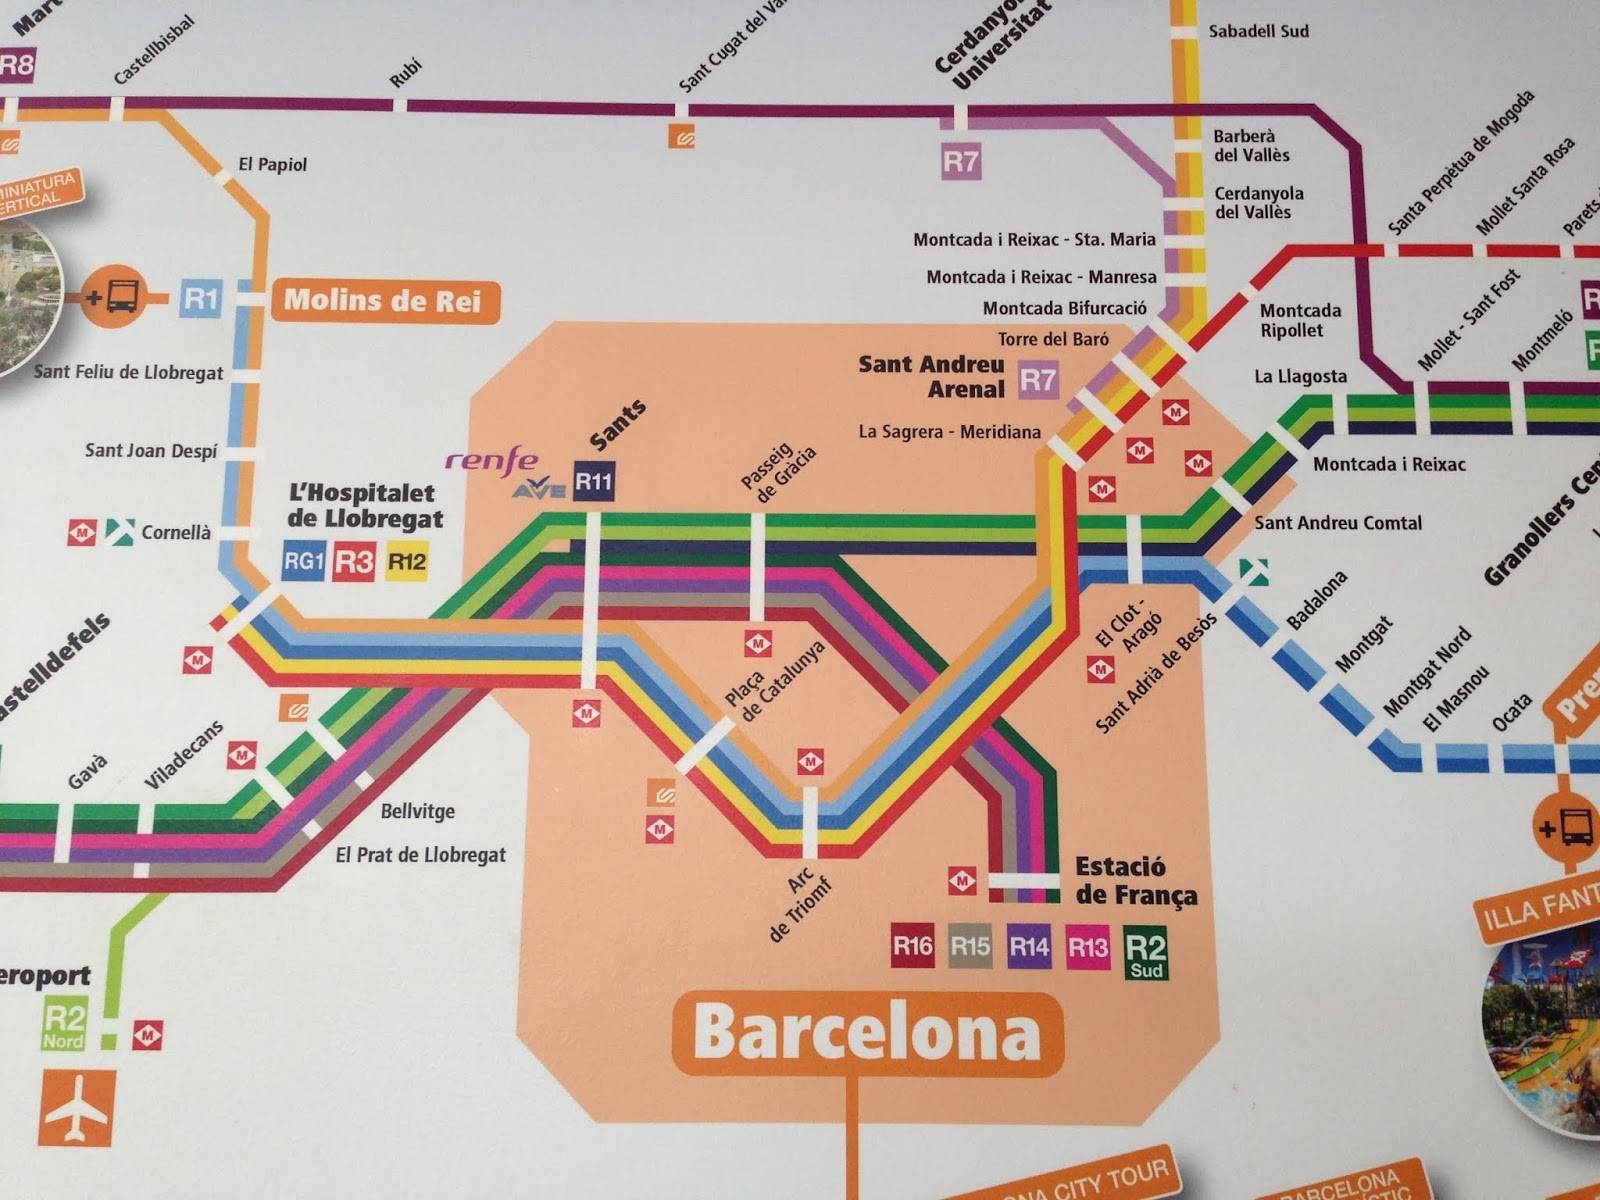 Как добраться из барселоны в лиссабон: поезд, автобус, машина. расстояние, цены на билеты и расписание 2021